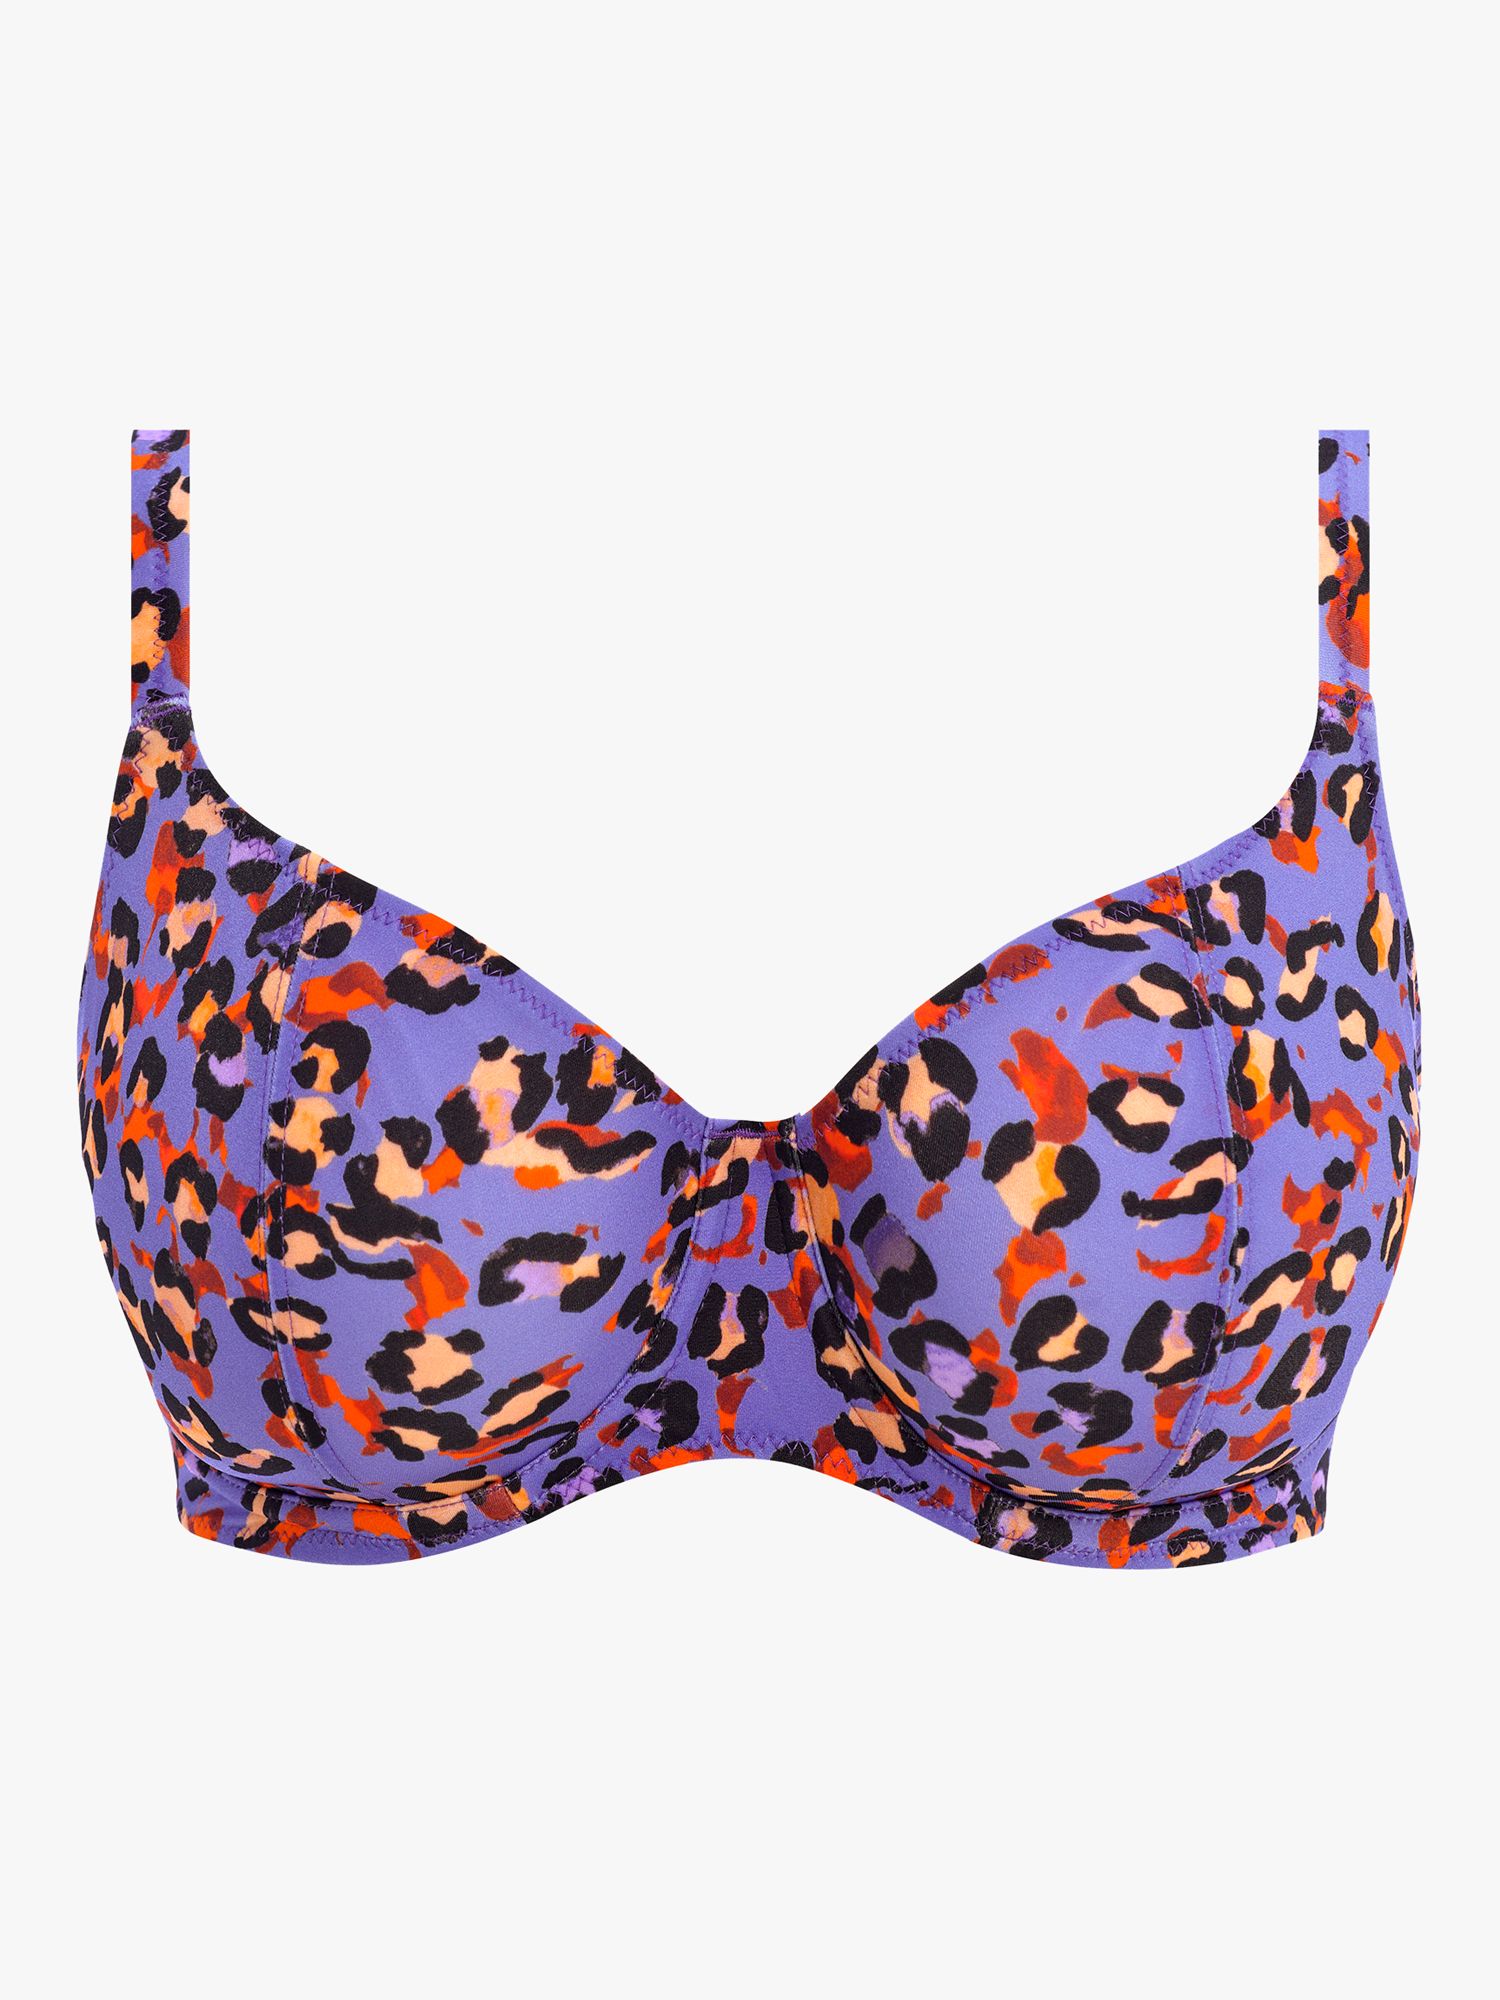 Freya San Tiago Nights Leopard Print Plunge Bikini Top, Blue/Multi, 36G